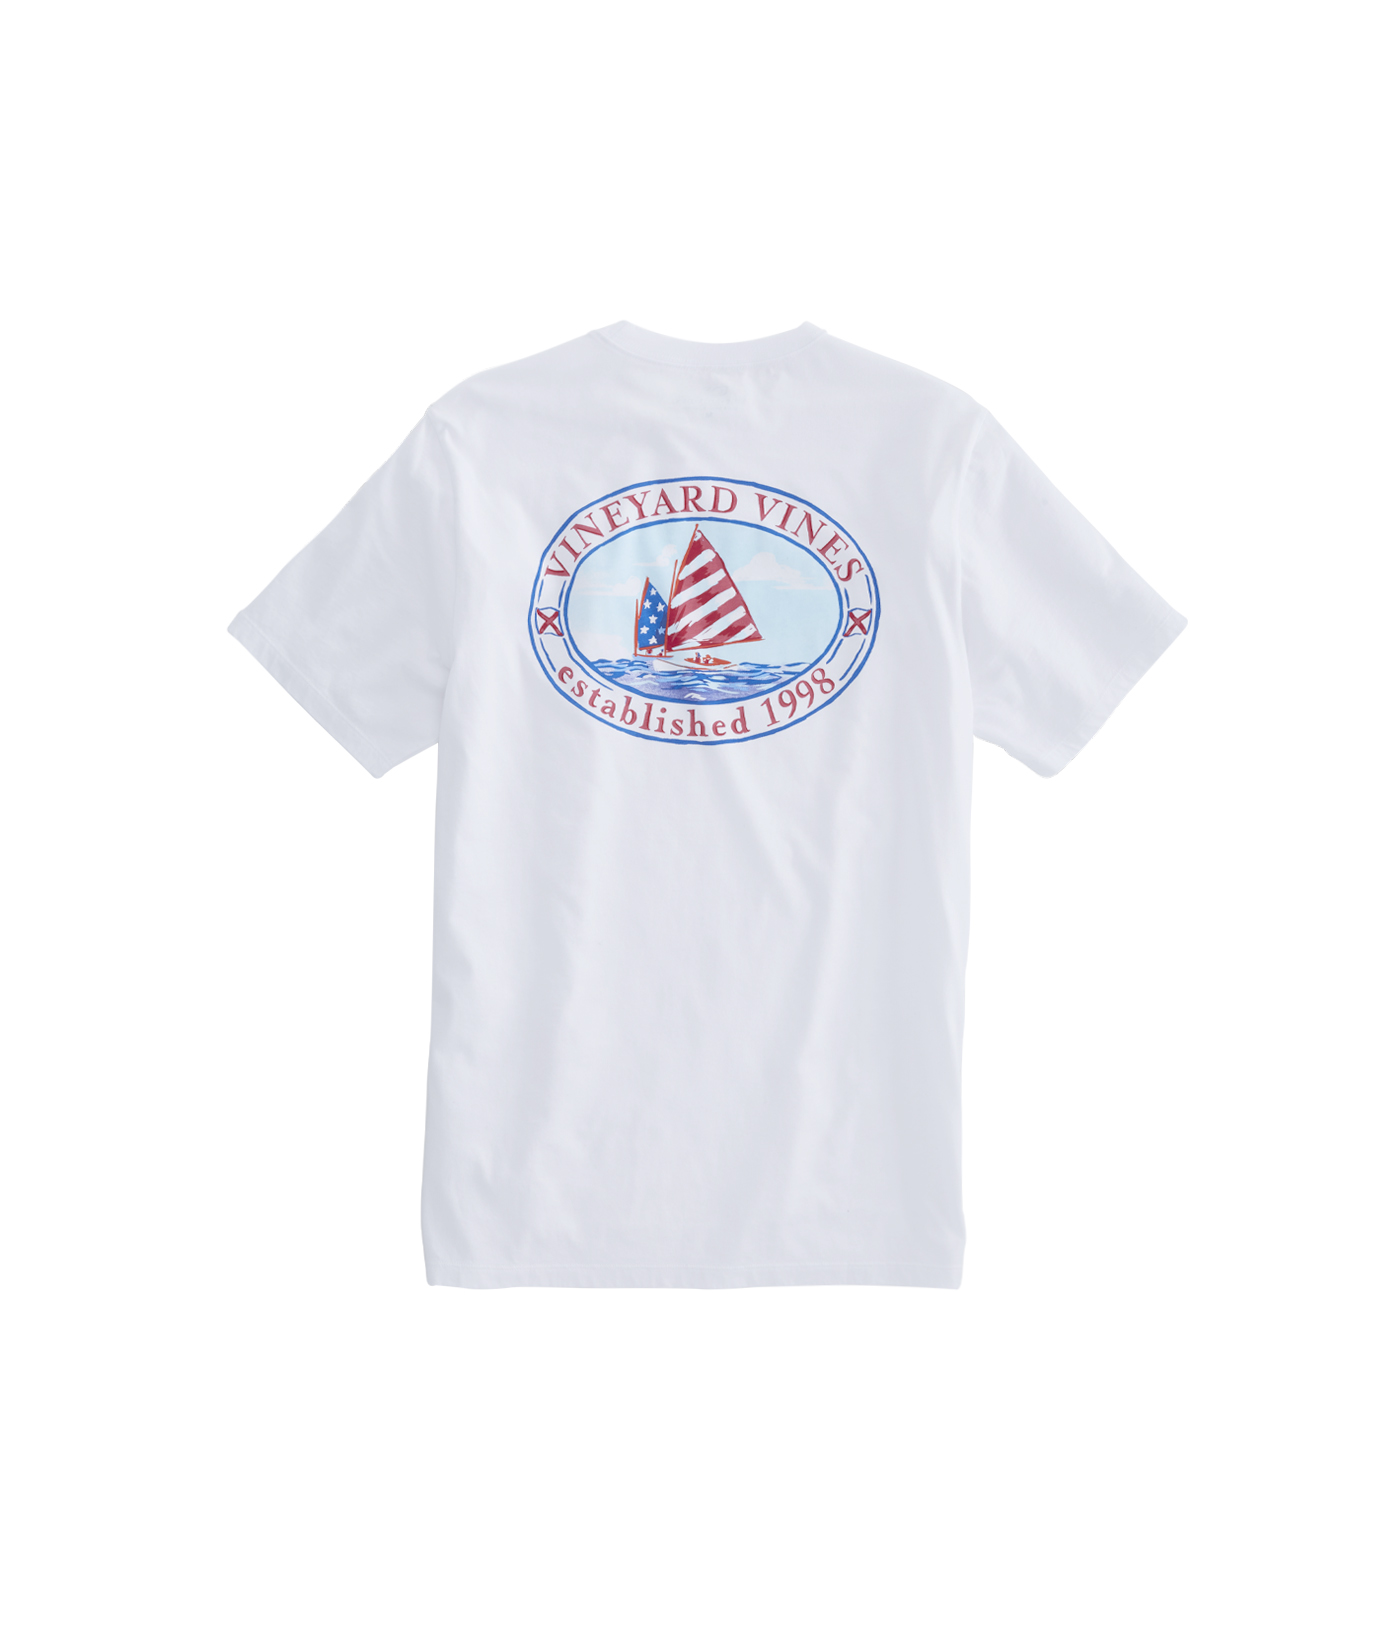 Shop American Sail Pocket T-Shirt at vineyard vines